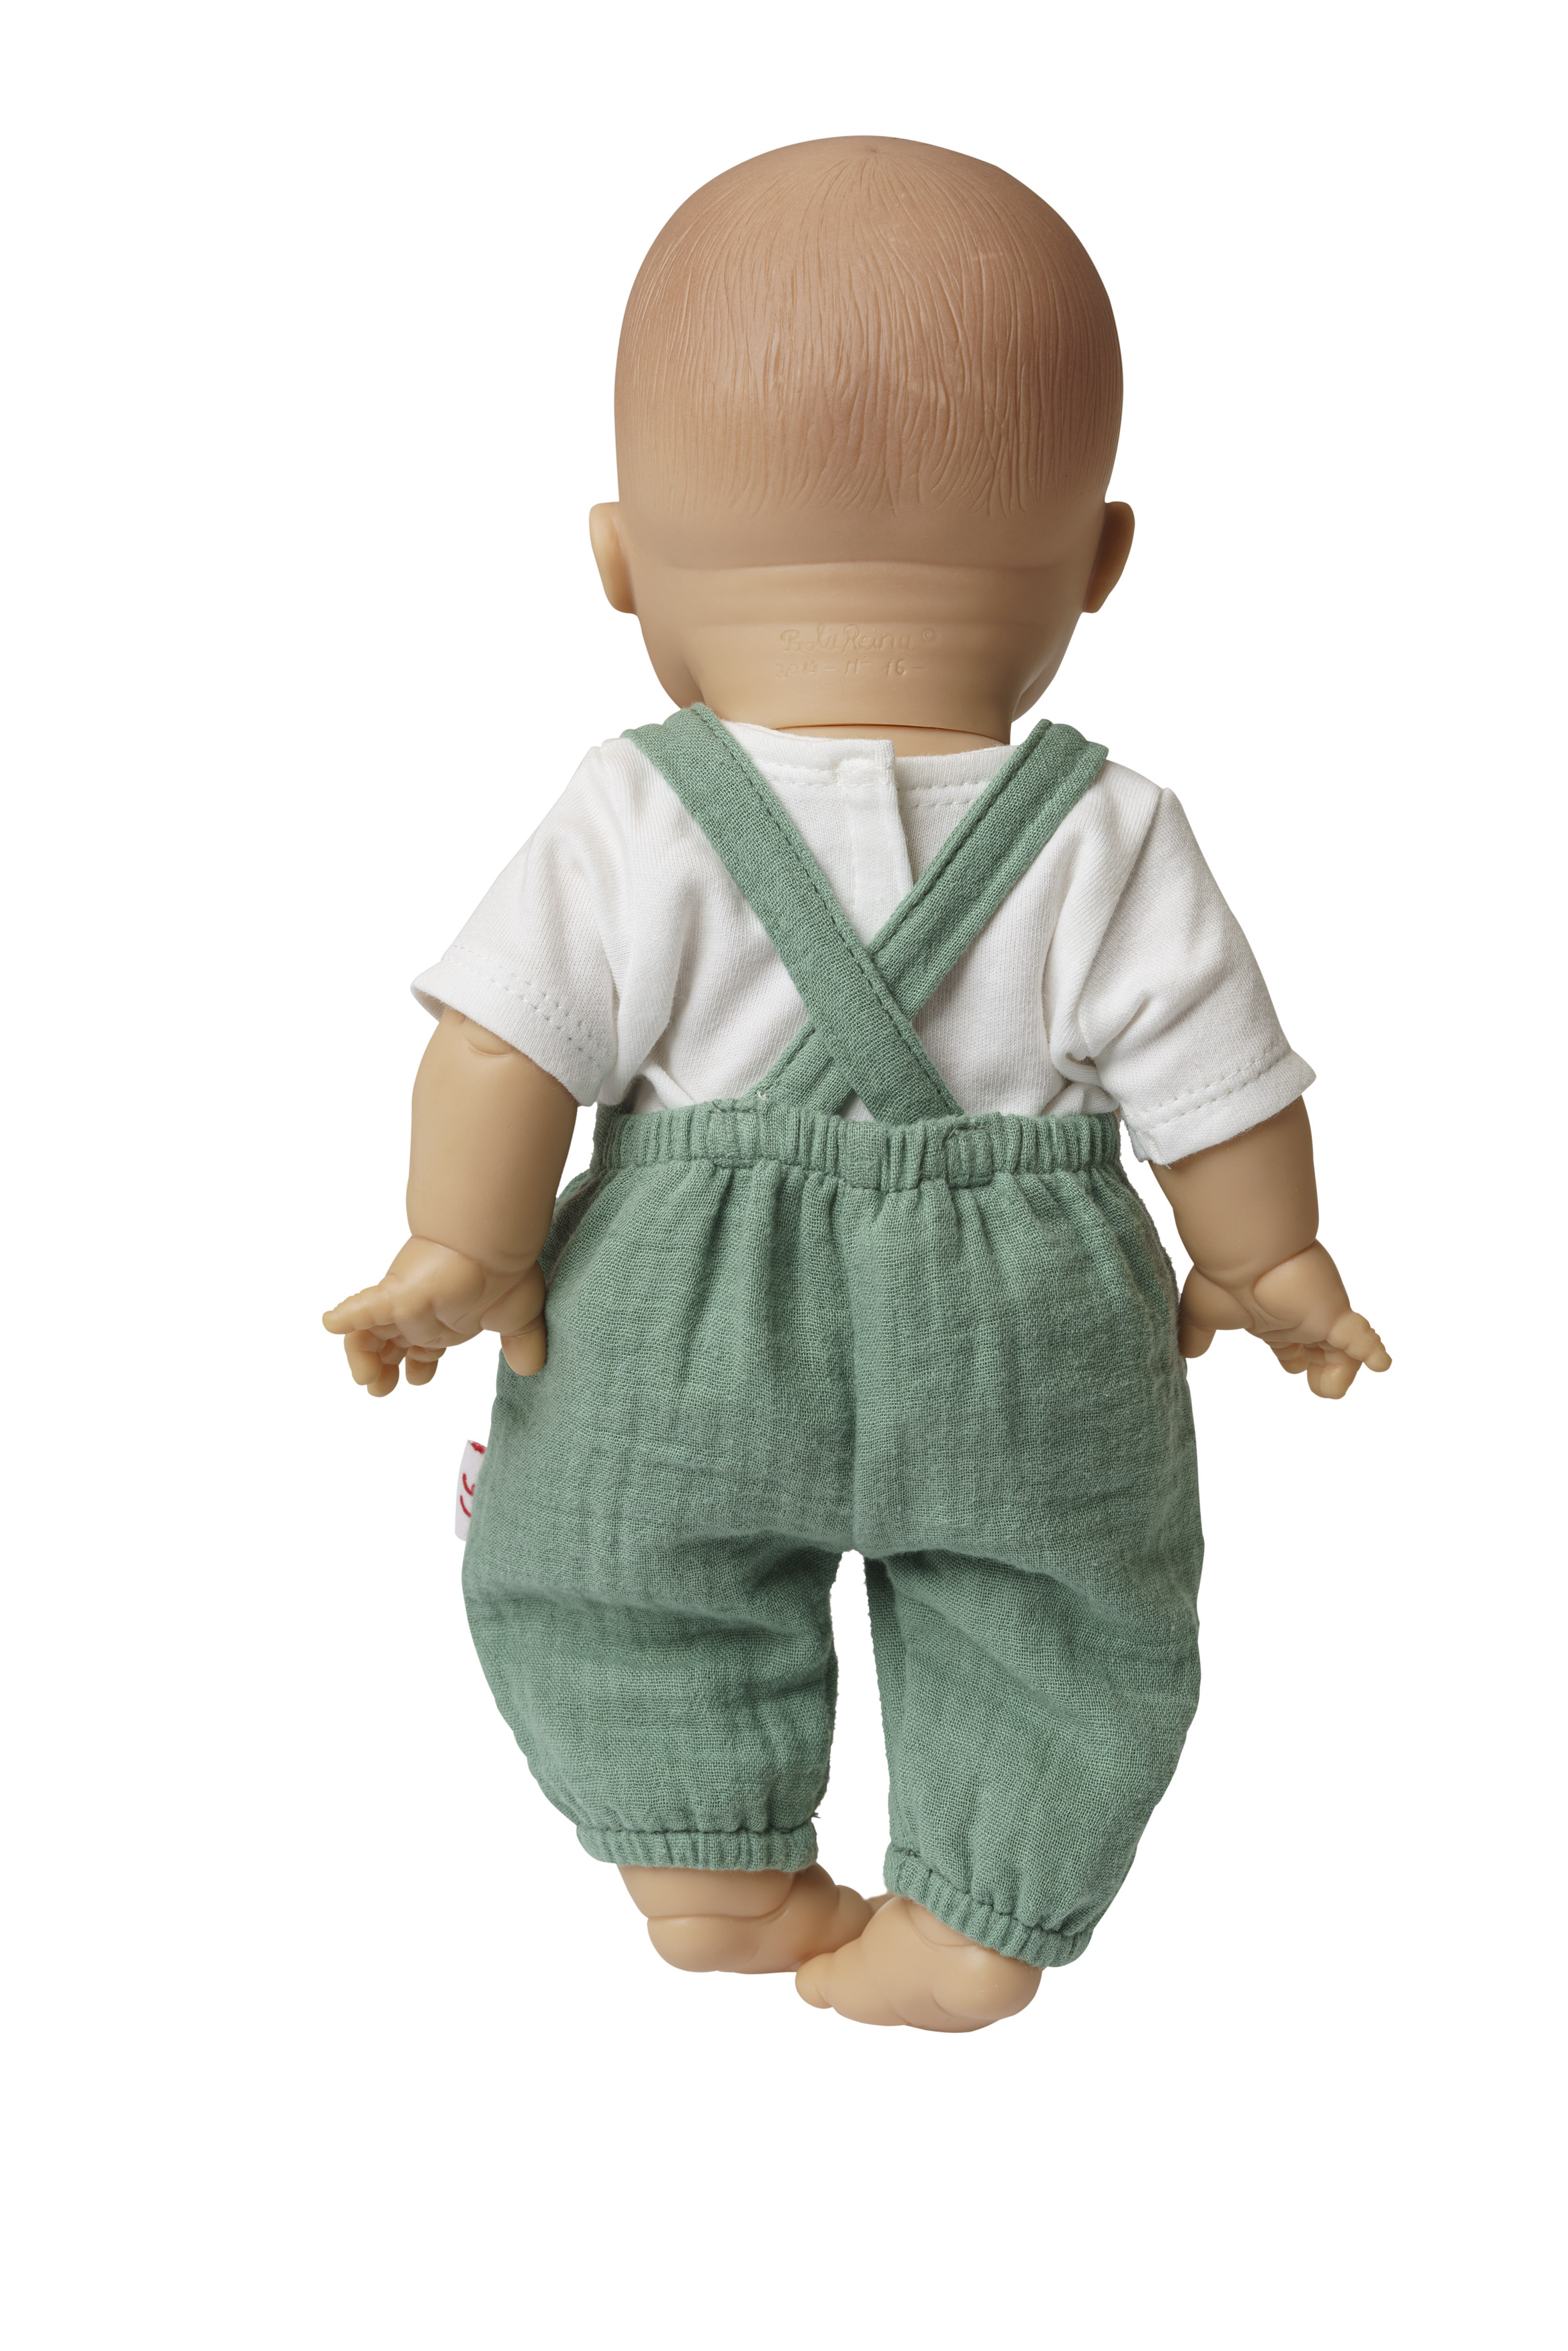 Puppen-Latzhose aus 100 % Bio-Baumwolle, salbeigrün, mit weißem T-Shirt, 2-teilig, Gr. 35-45 cm